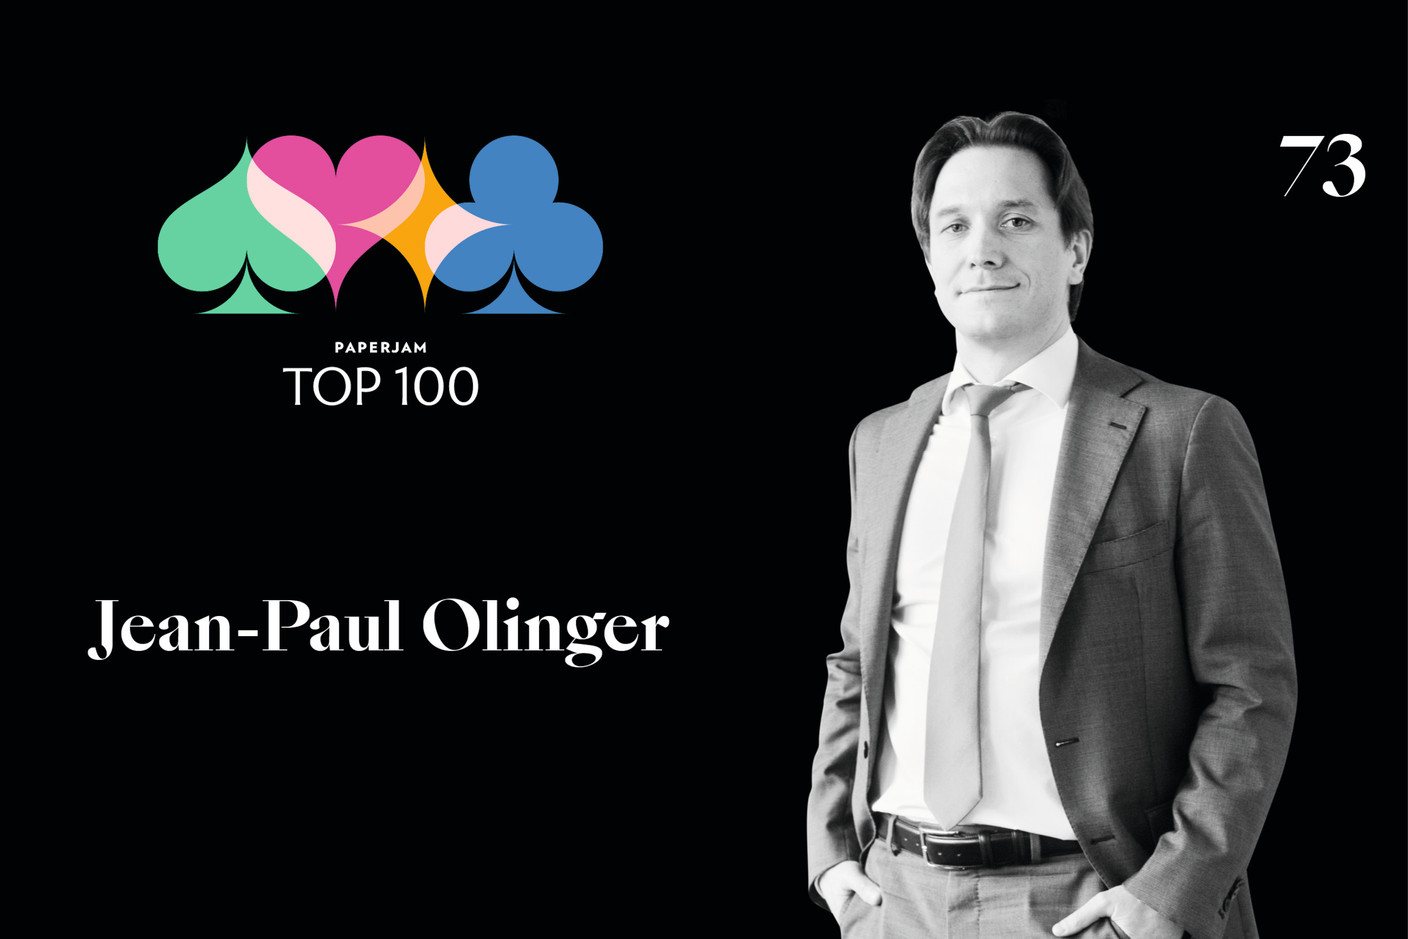 Jean-Paul Olinger, 73e du Paperjam Top 100 2020. (Illustration: Maison Moderne)